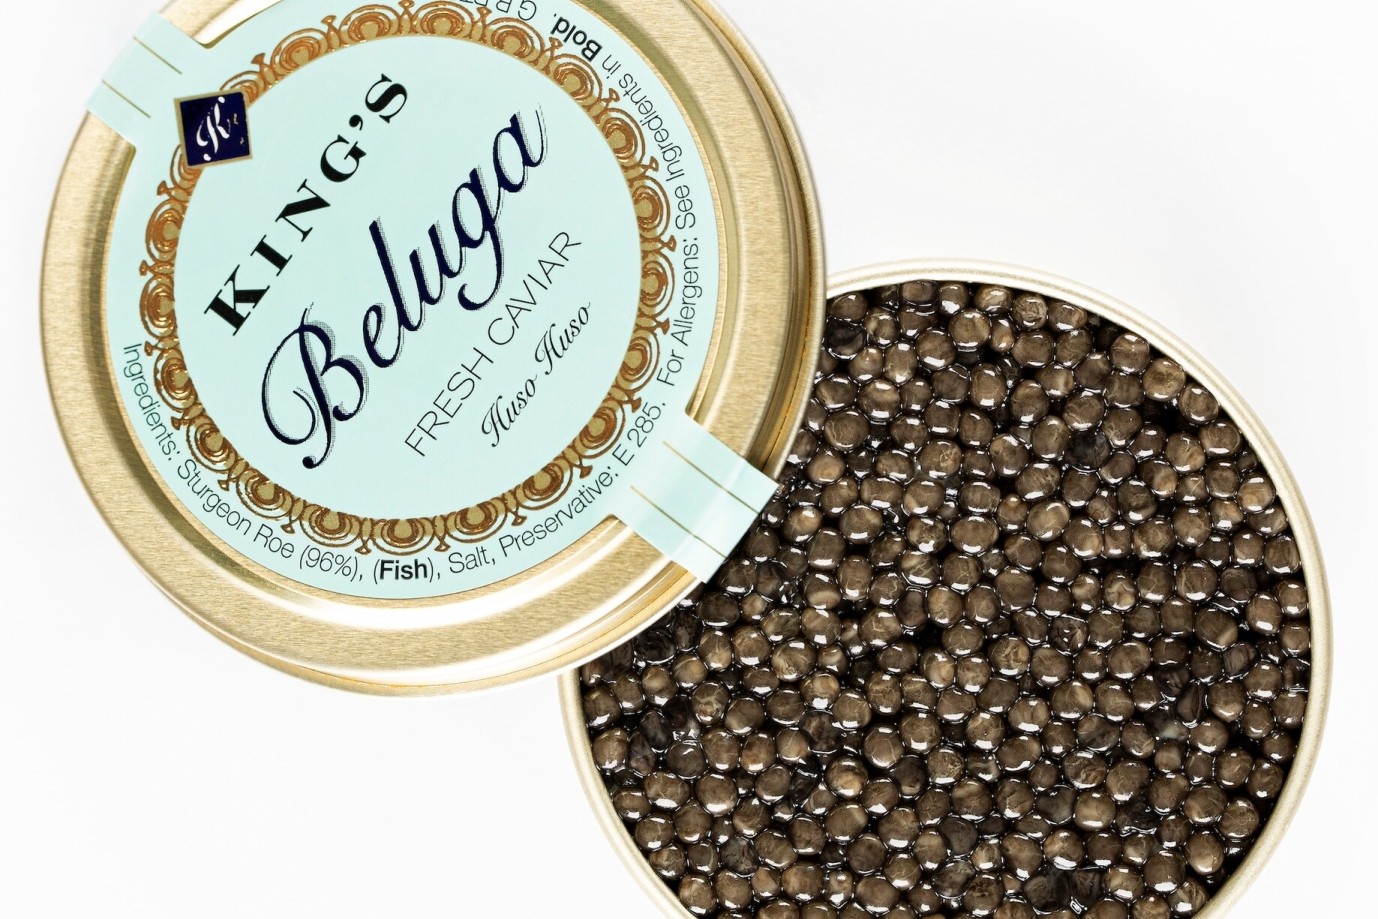 Buy Beluga Caviar Online